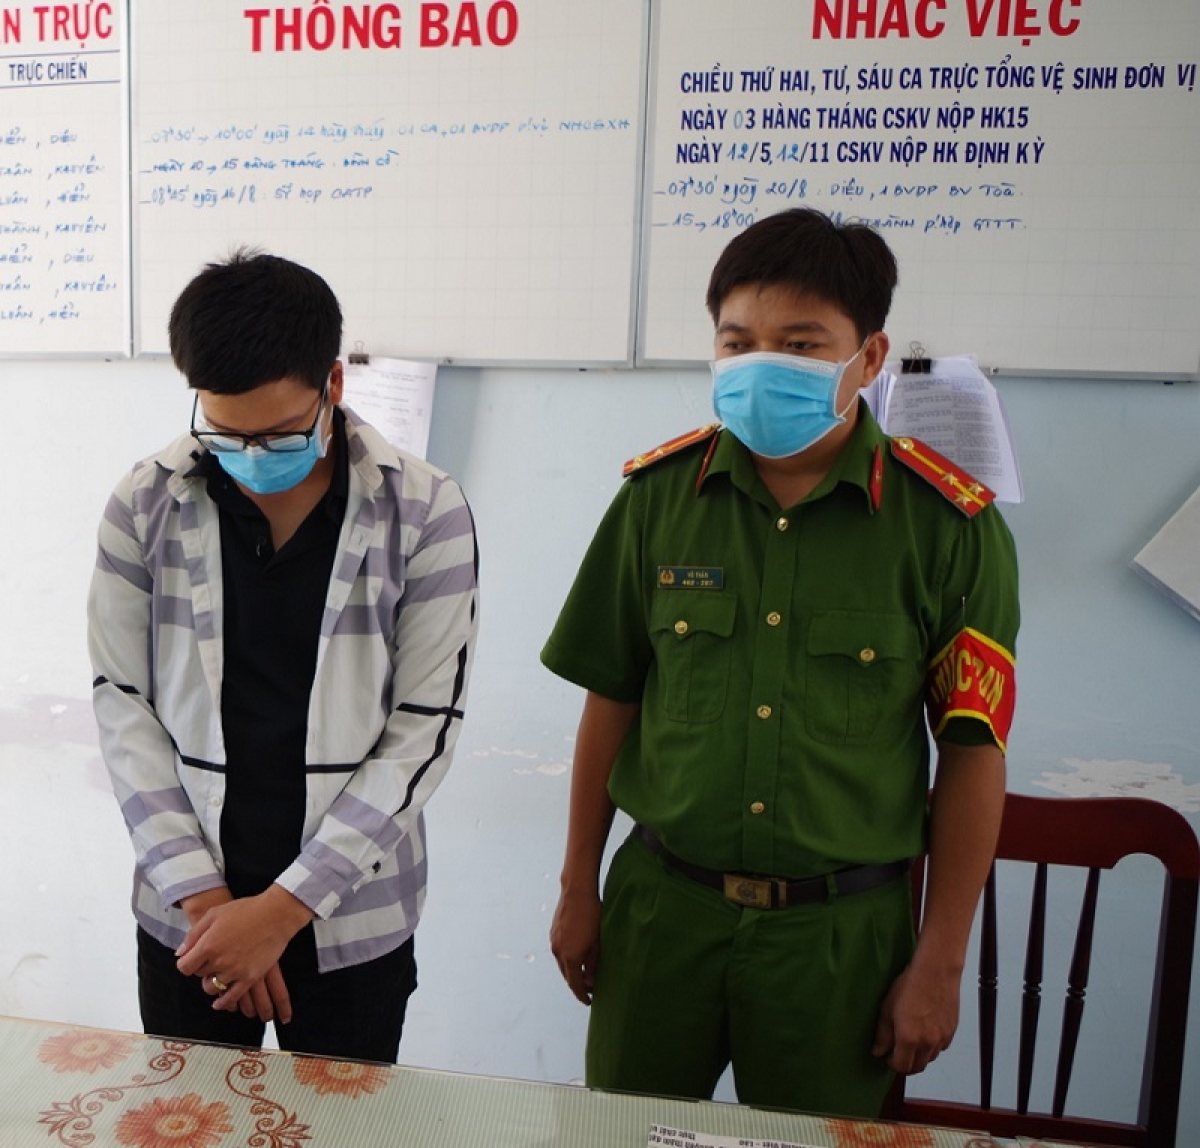 Ninh Thuận bắt giam đối tượng cho vay nặng lãi - Ảnh 1.